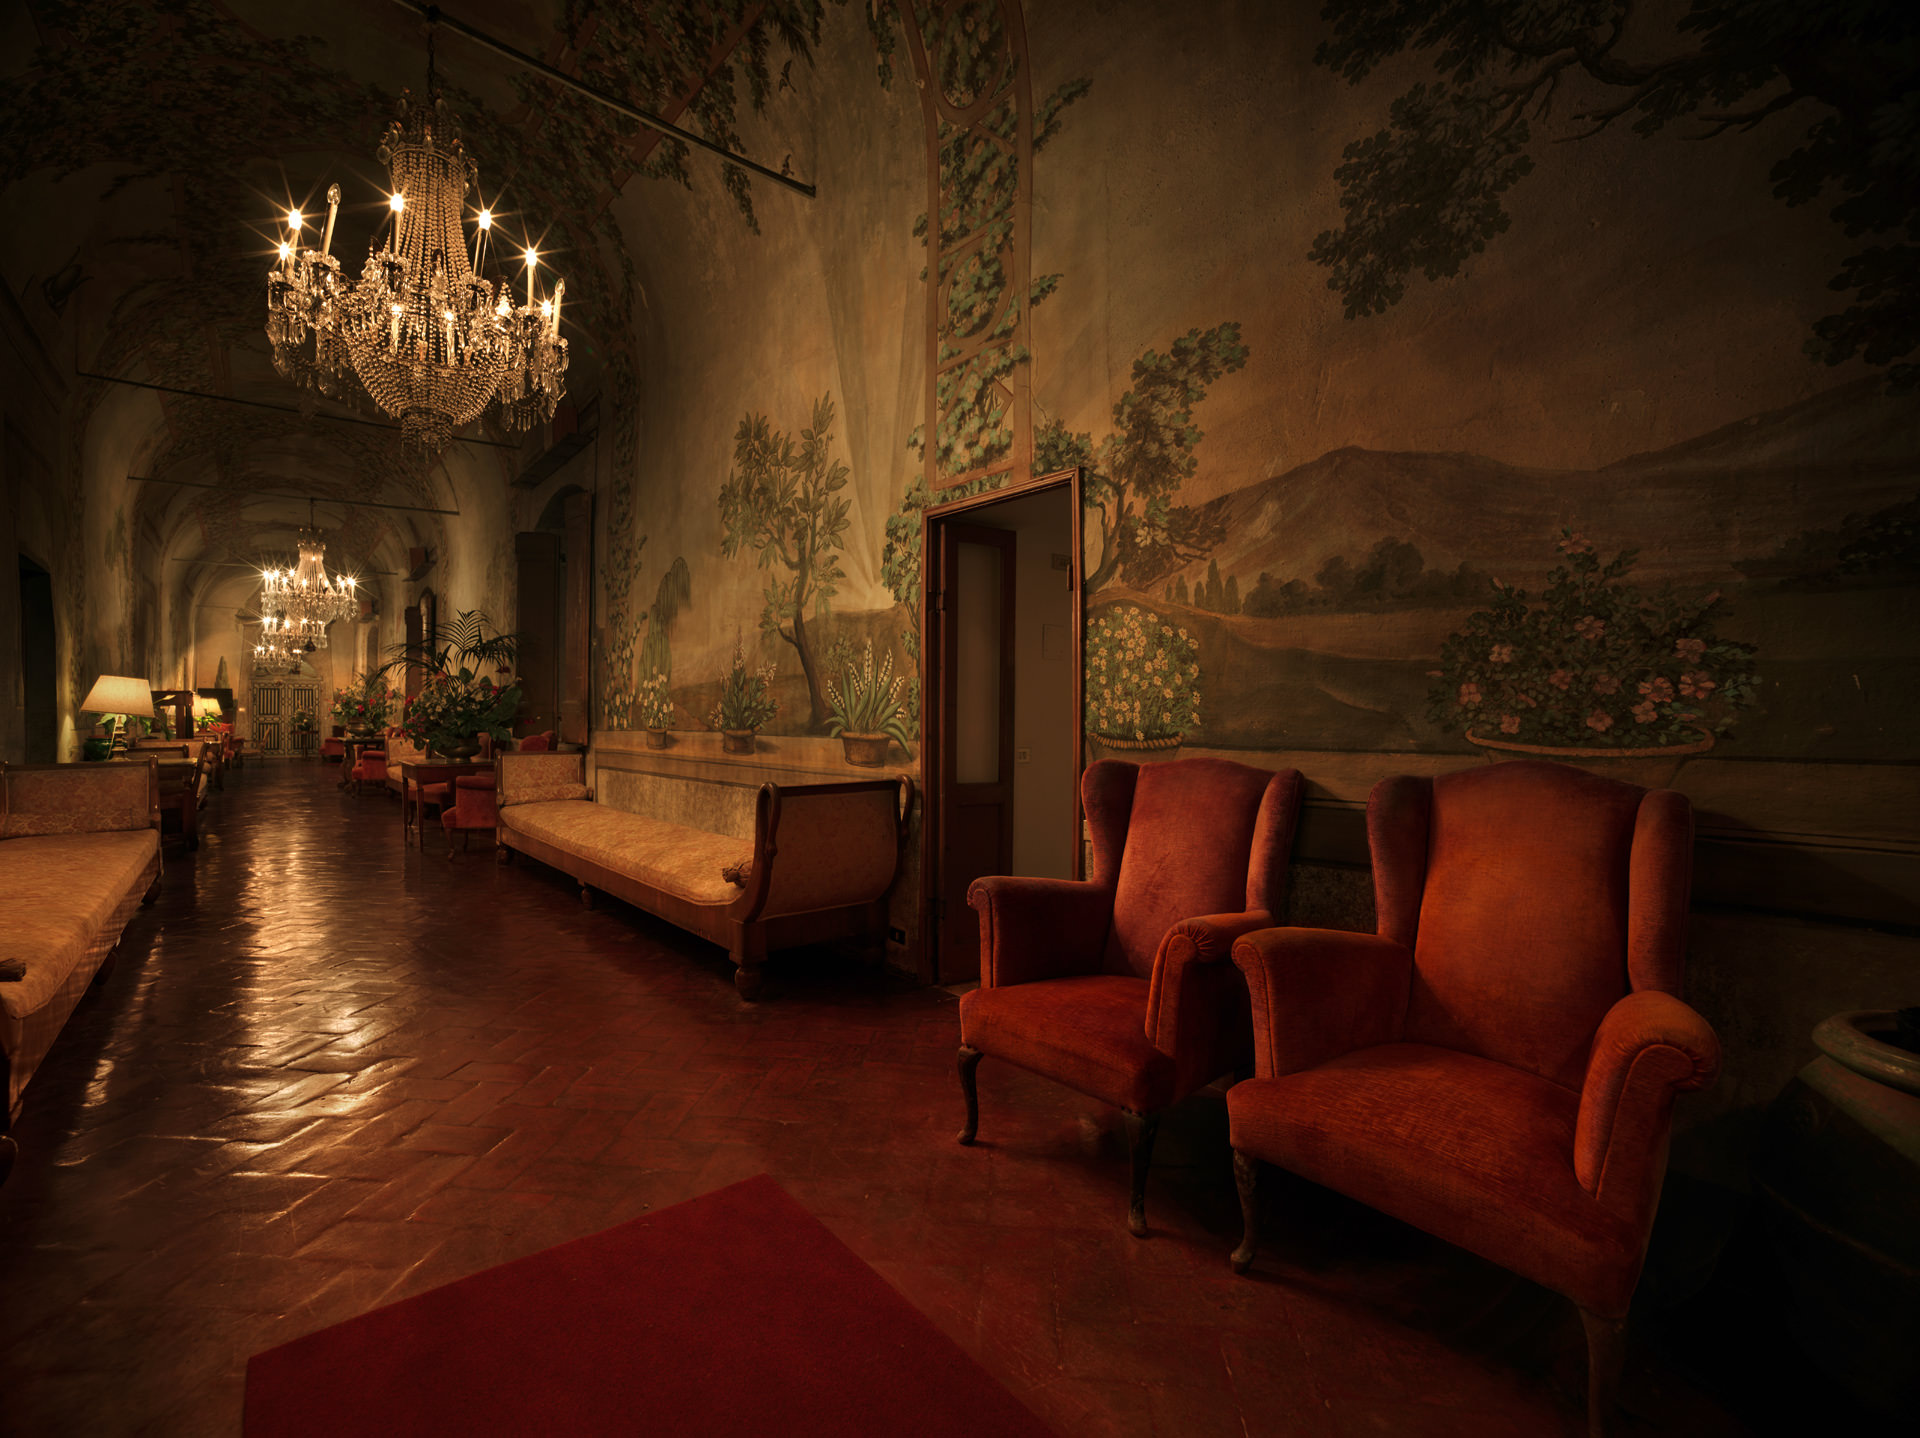 ©ankeluckmann1341, Villa Villoresi Hotel, Architecture, Interior, Italy, anke luckmann, interior